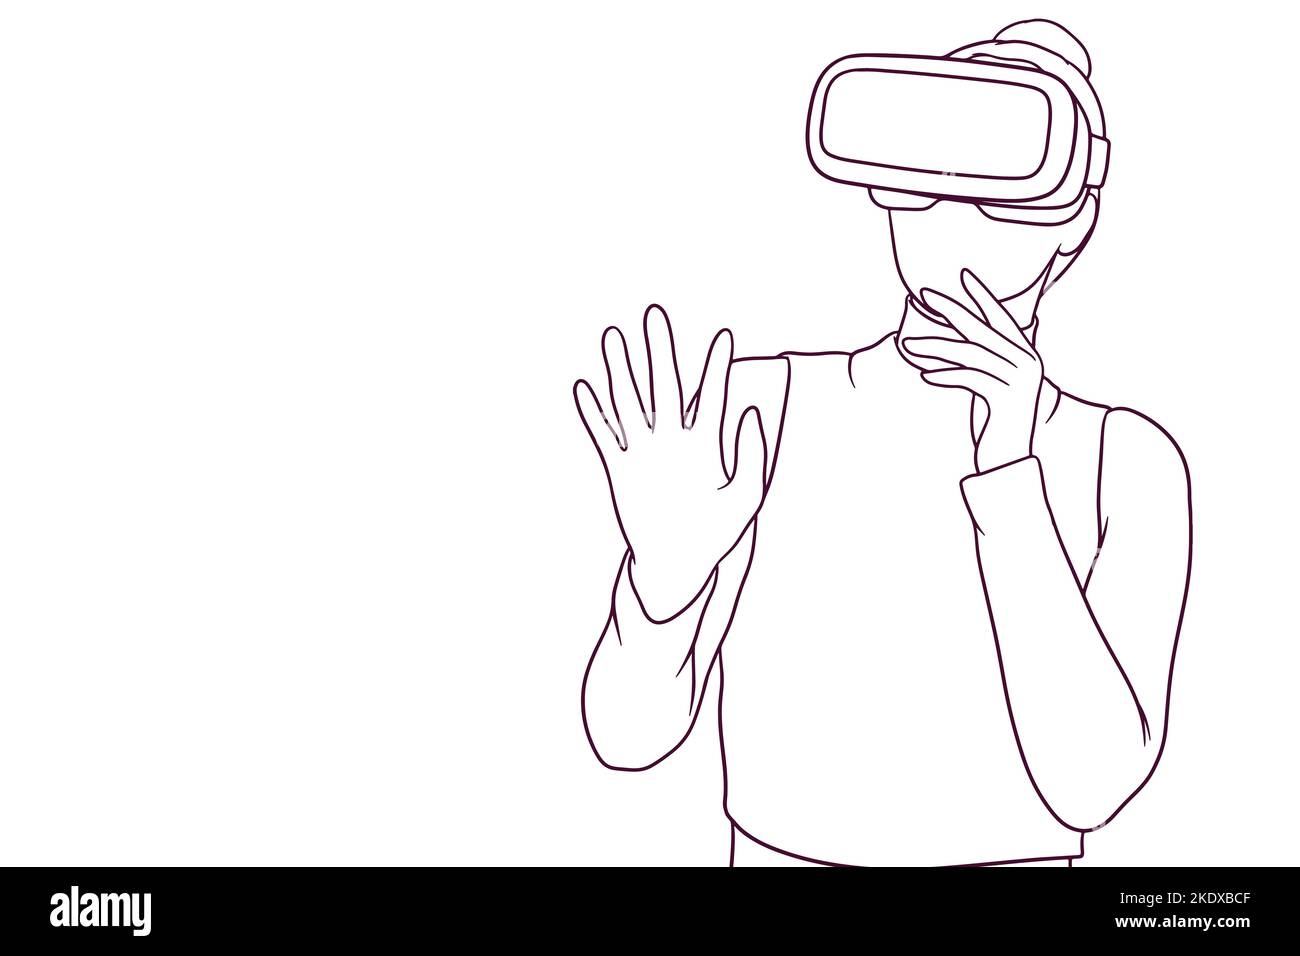 Junges Mädchen überrascht während der VR-Erfahrung. Technologien Konzept. Handgezeichnete Stil Vektor-Illustration Stock Vektor